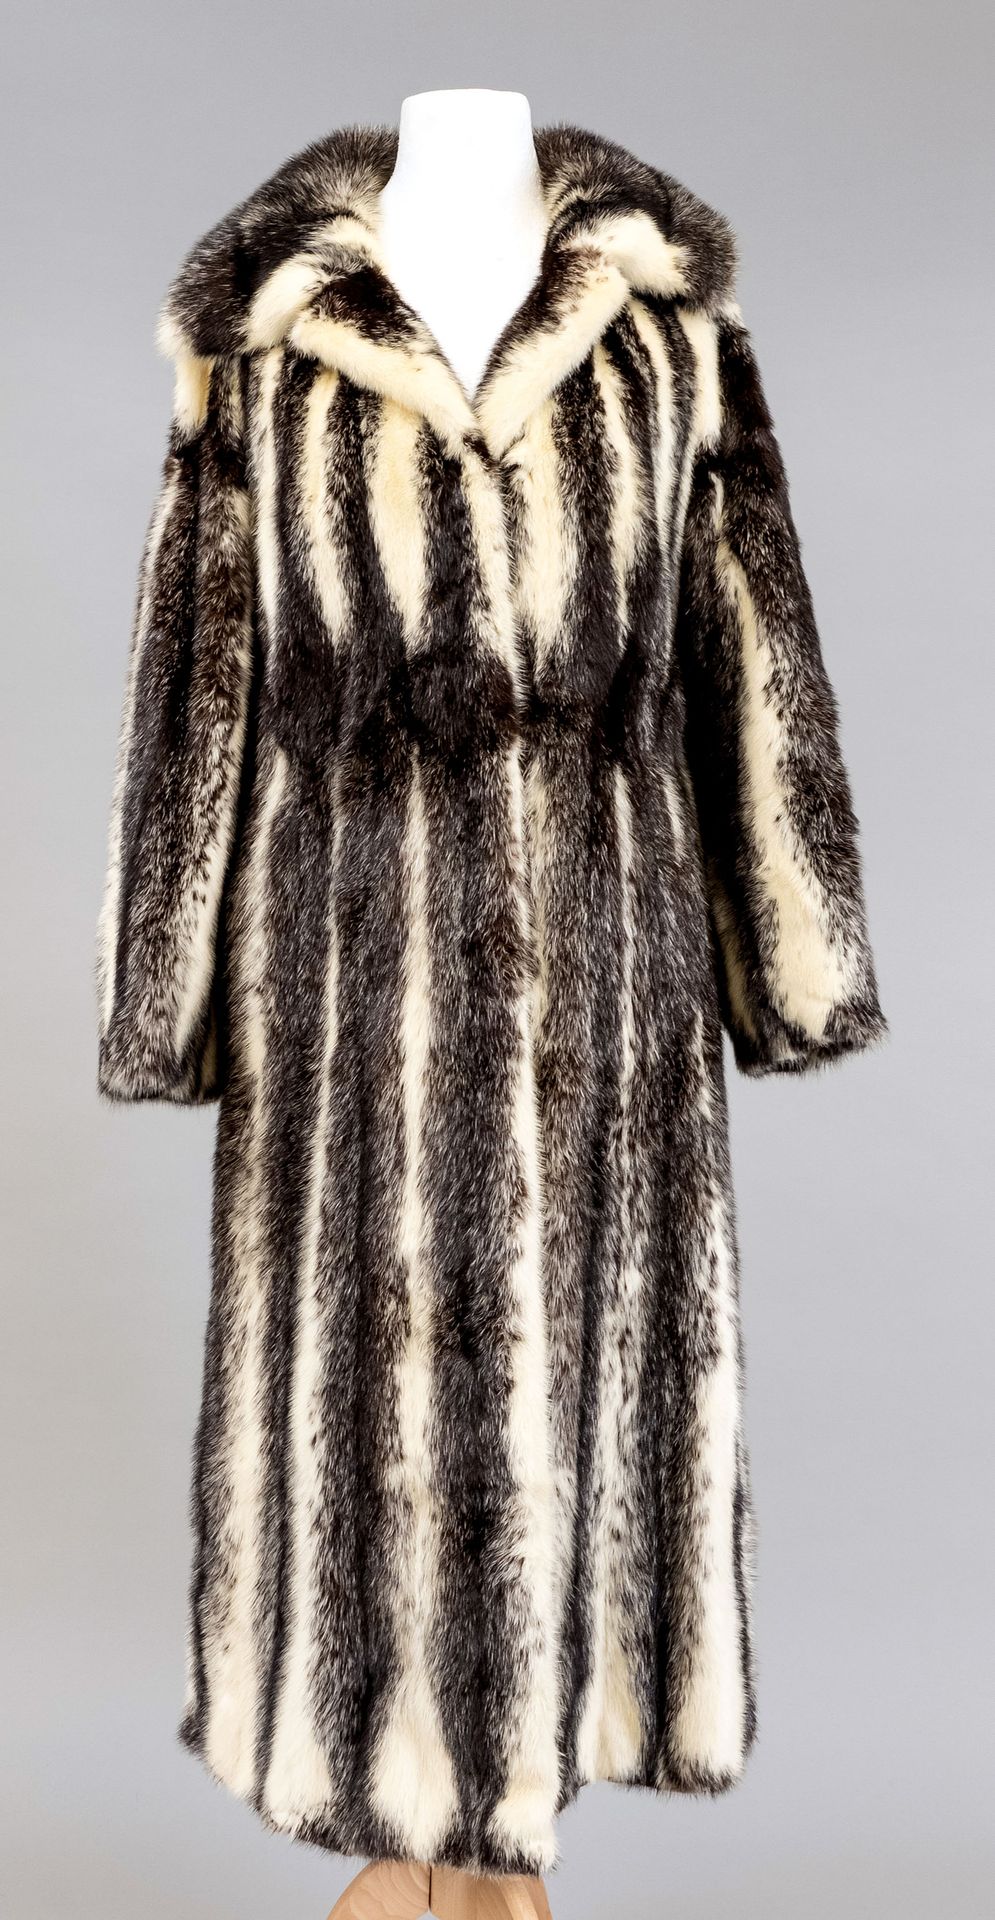 Null 斑驳的女士貂皮大衣，在衬里的标签上标有Saga Mink，没有标明尺寸，有轻微的磨损痕迹。